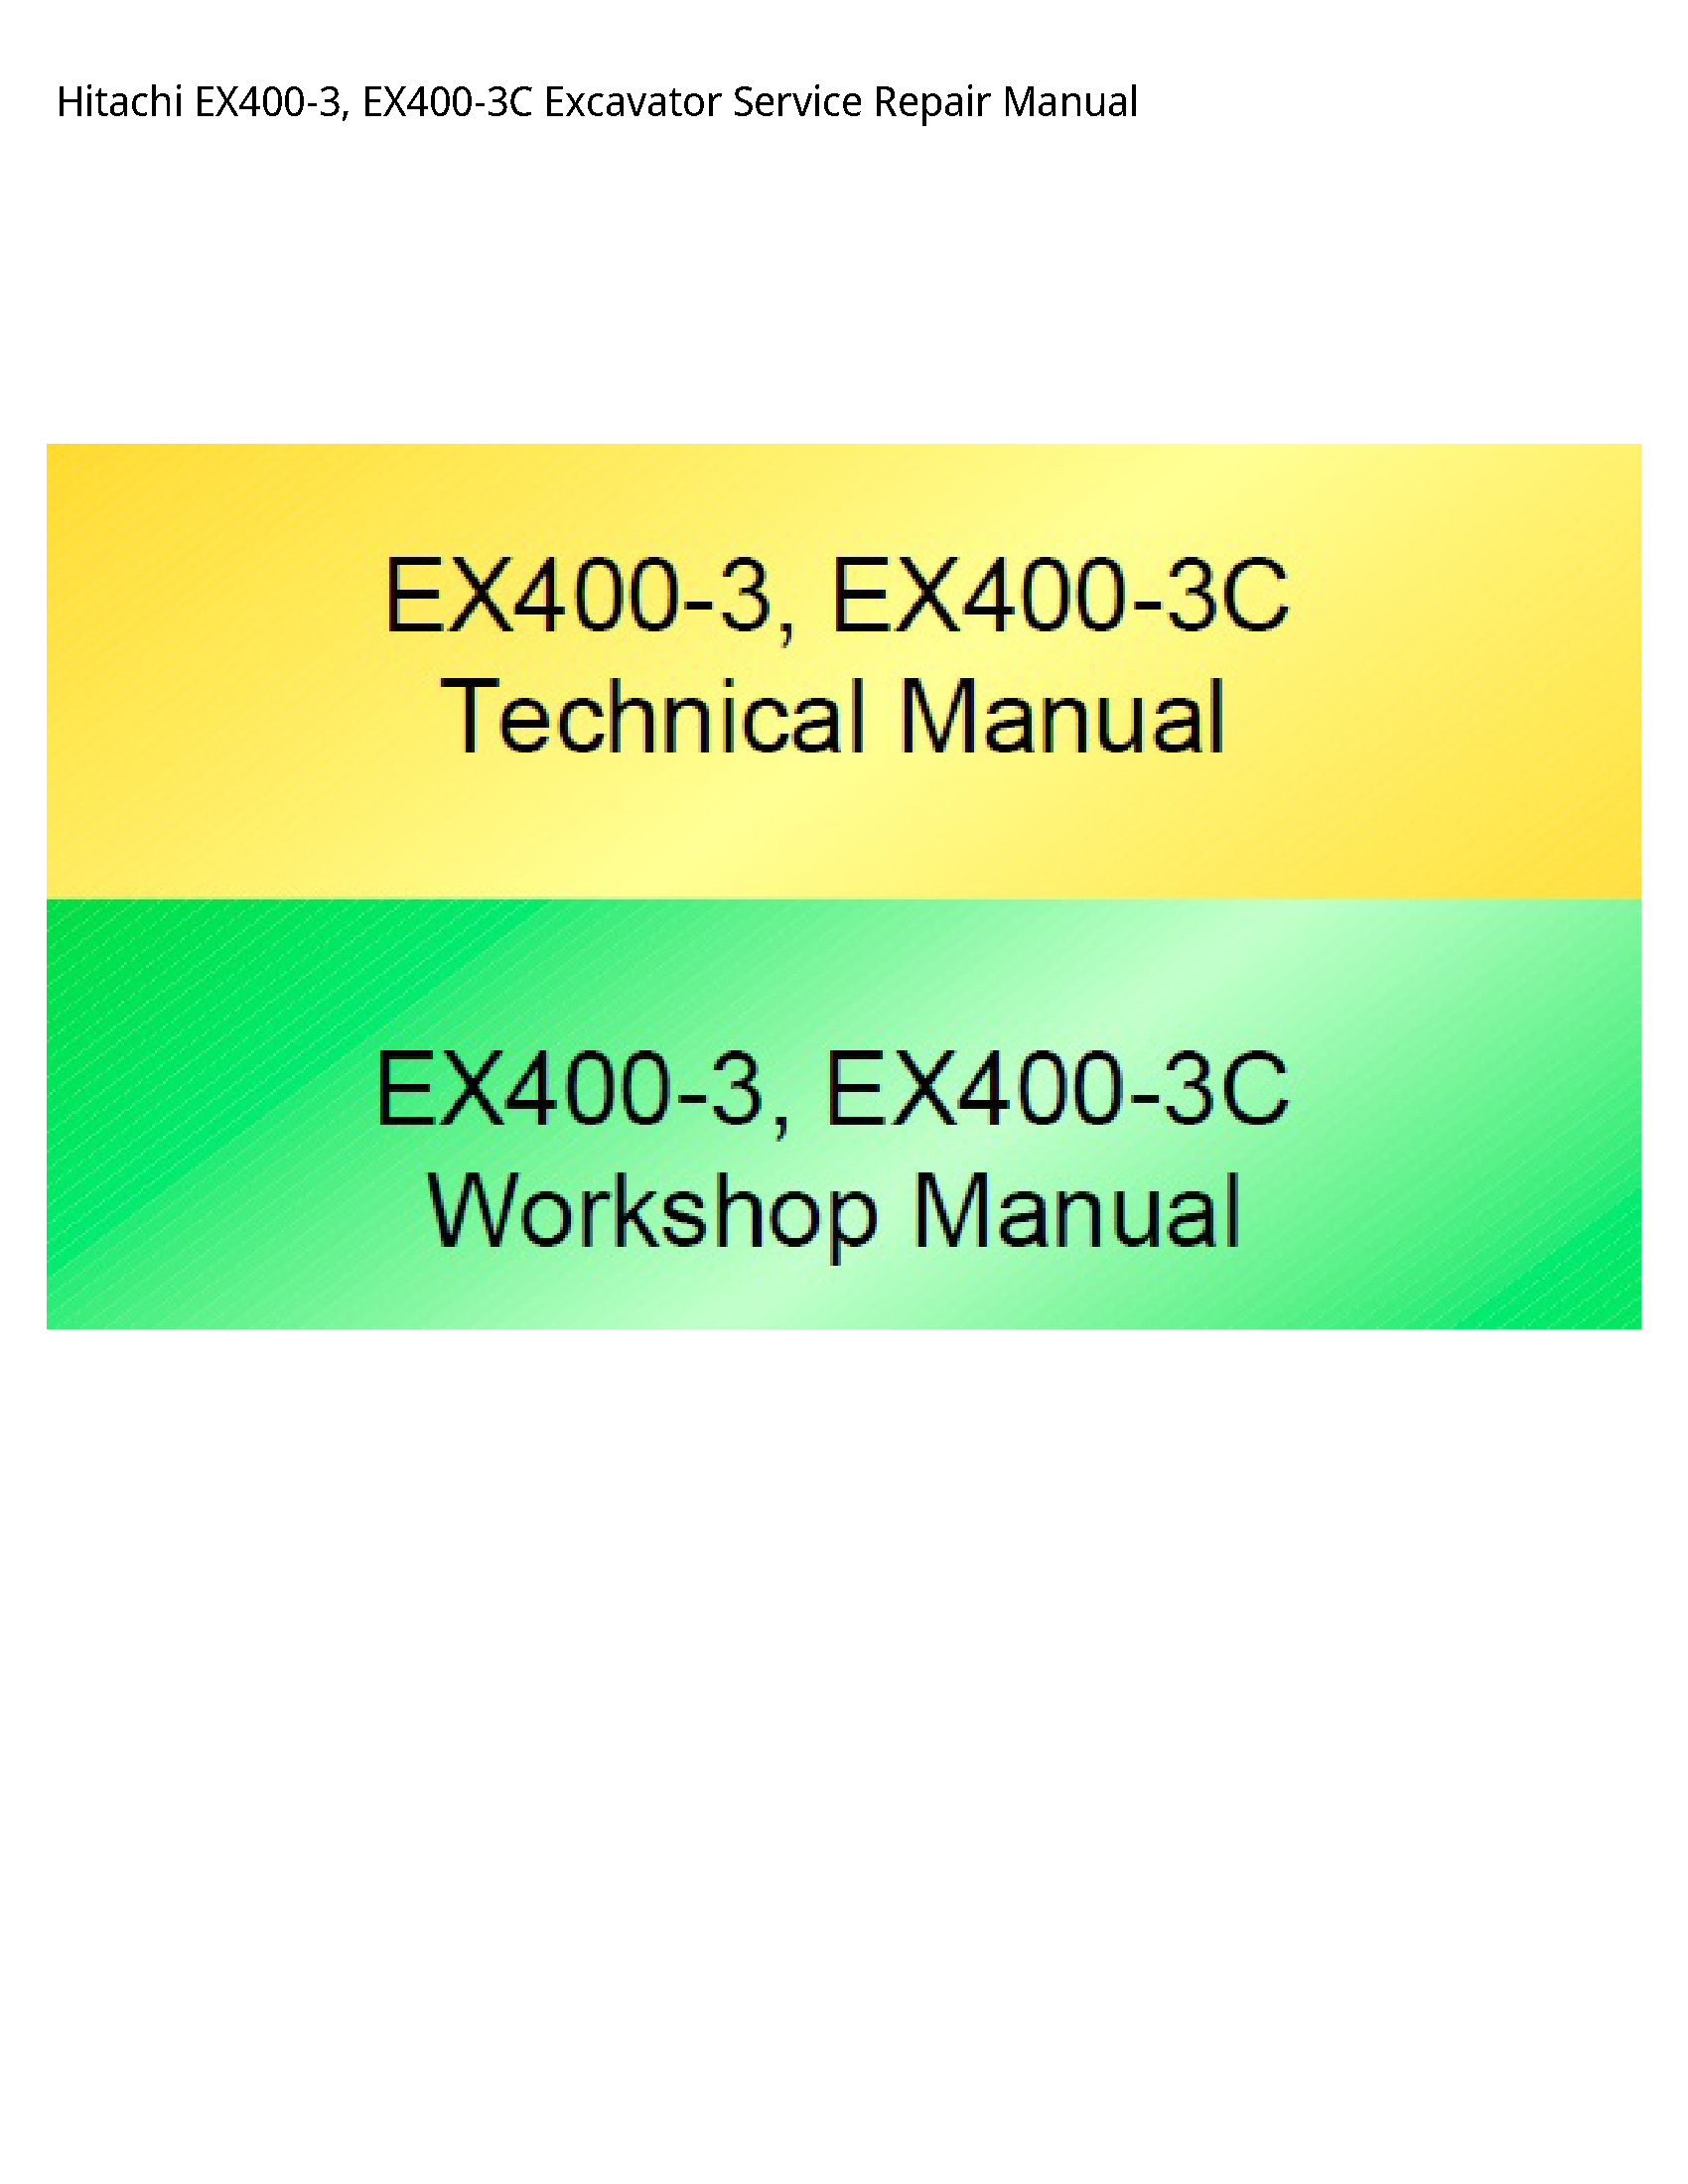 Hitachi EX400-3 Excavator manual